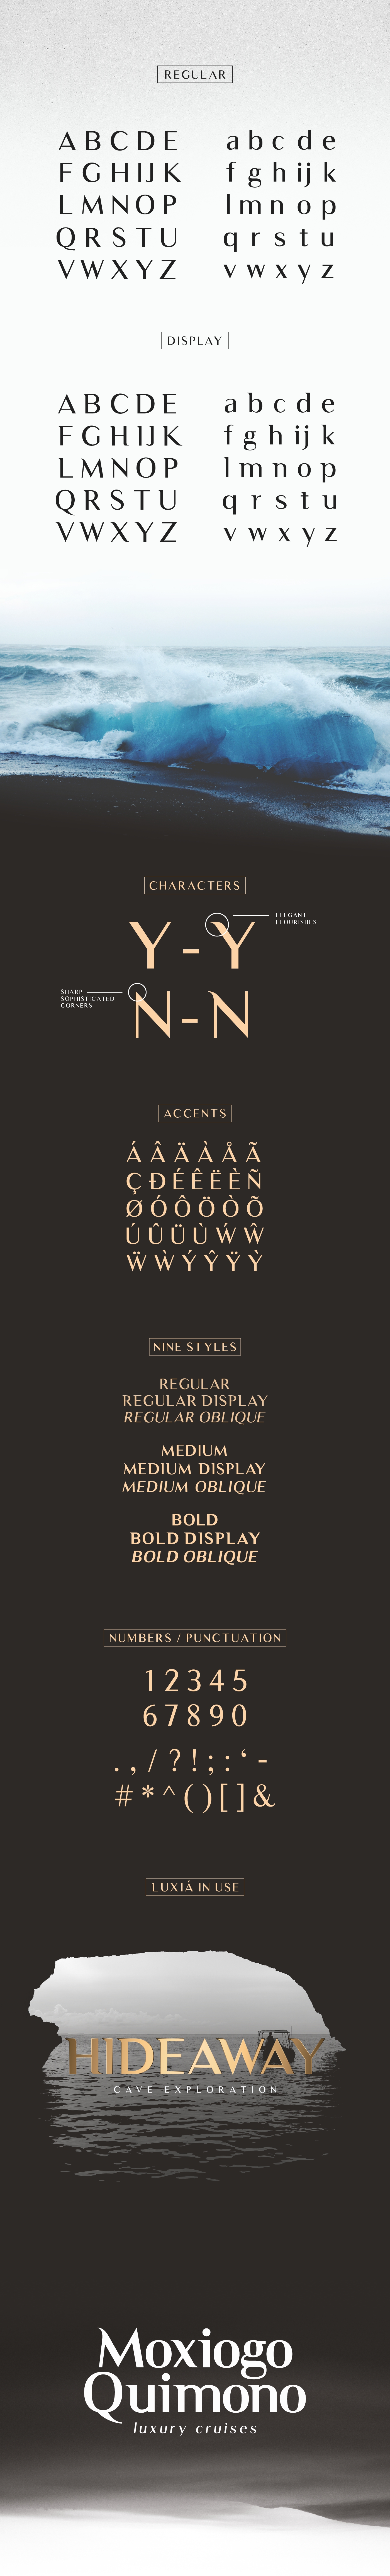 Luxia Free Typeface - sans-serif